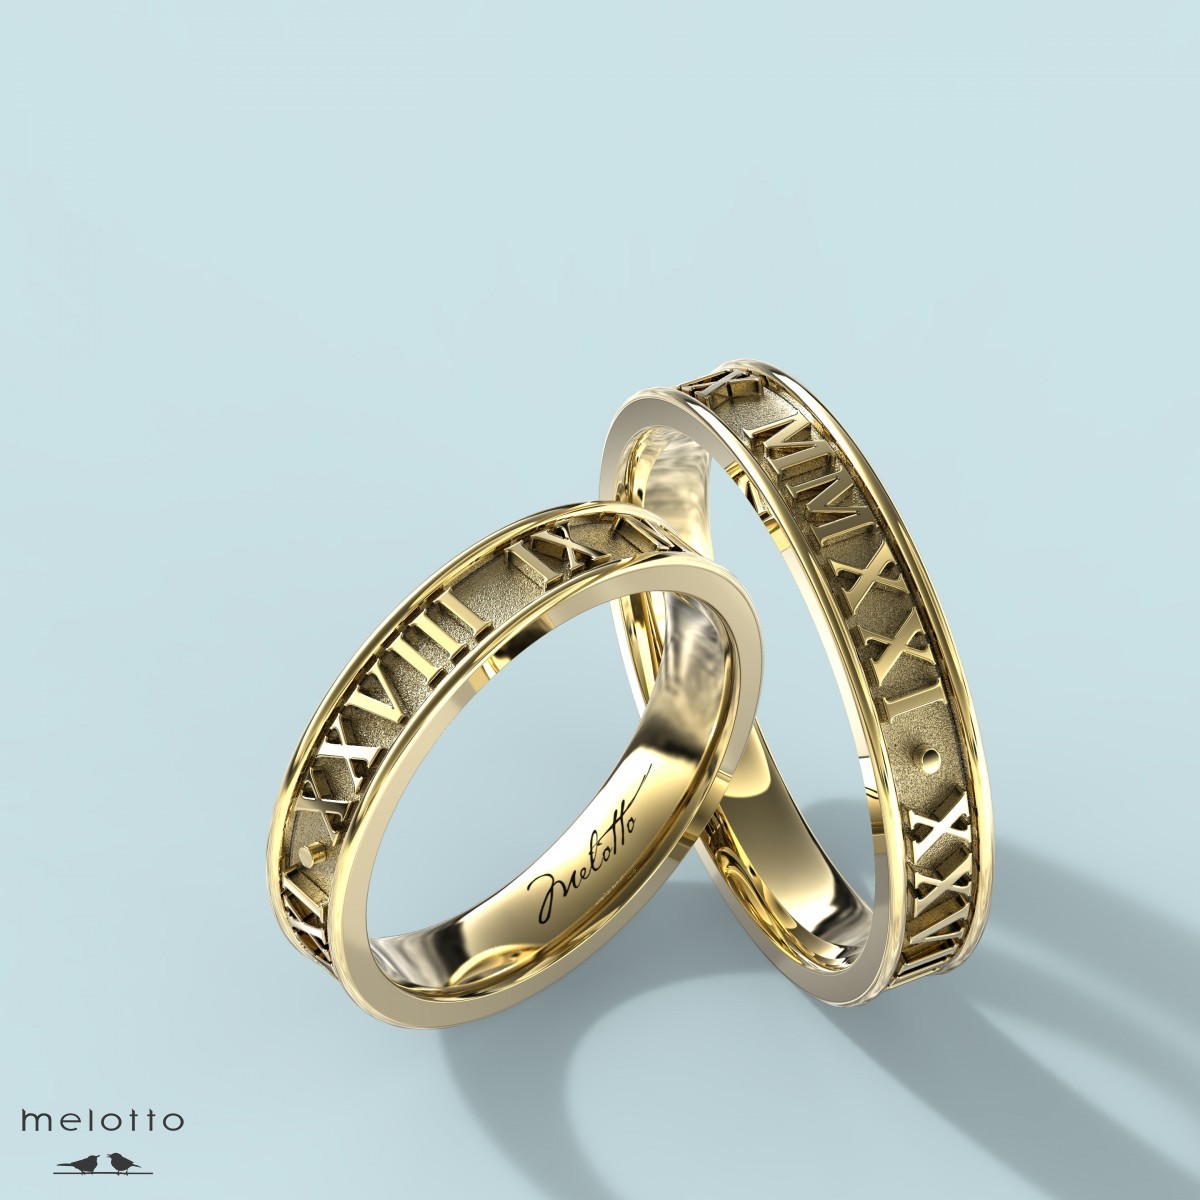 Обручальные кольца с римскими цифрами даты свадьбы